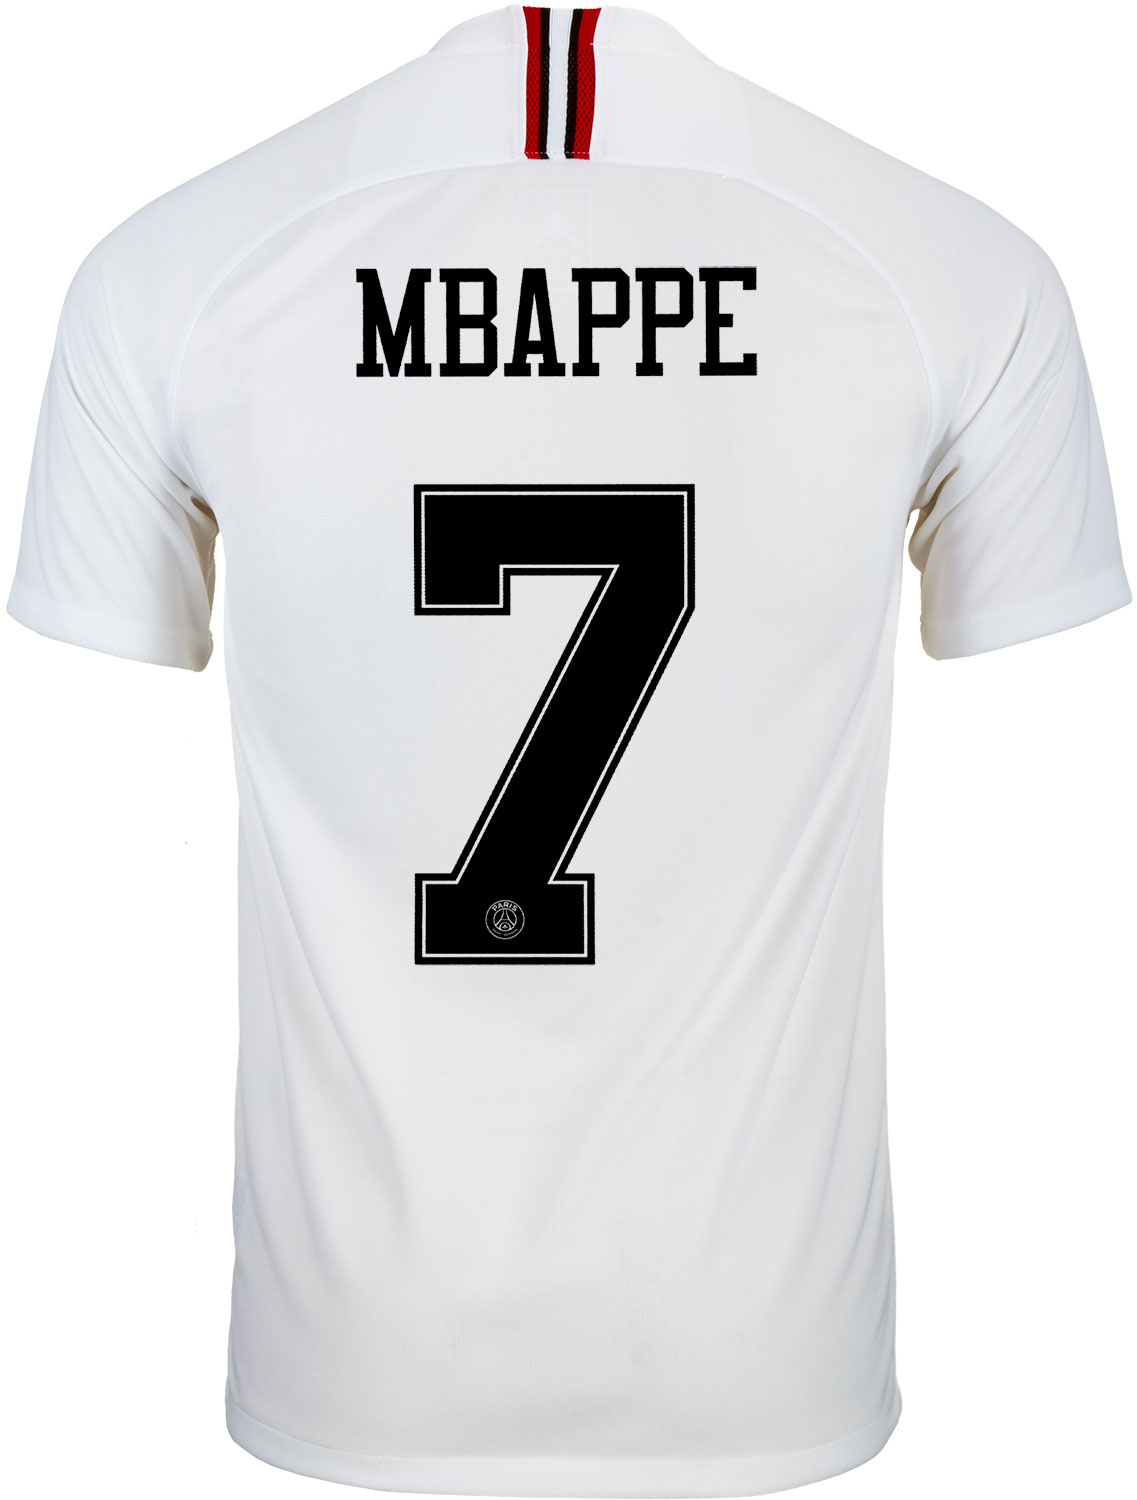 mbappe black psg jersey